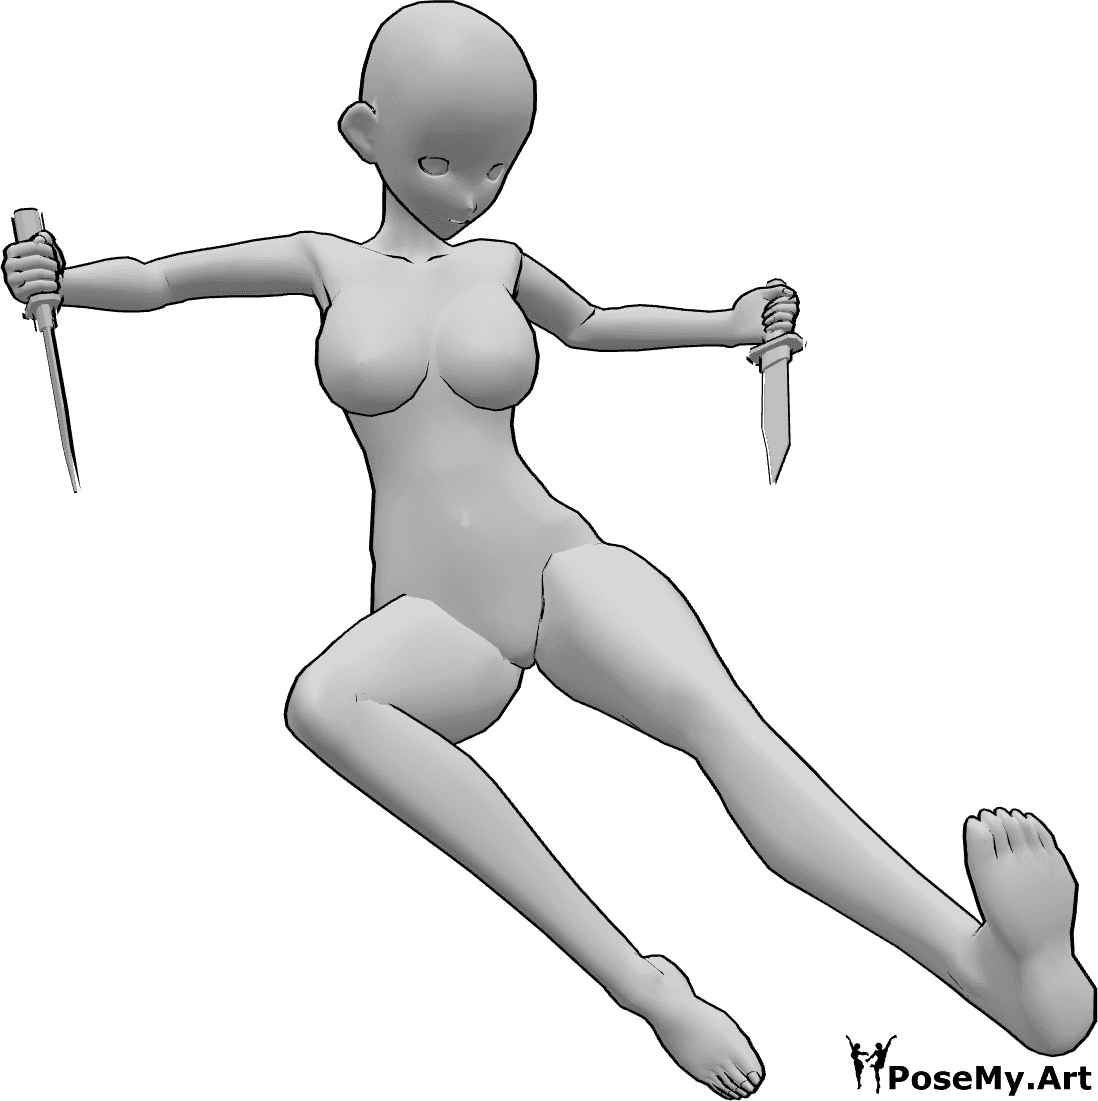 Posen-Referenz- Anime kicking Messer Pose - Anime-Frau springt, tritt und hält Messer in beiden Händen